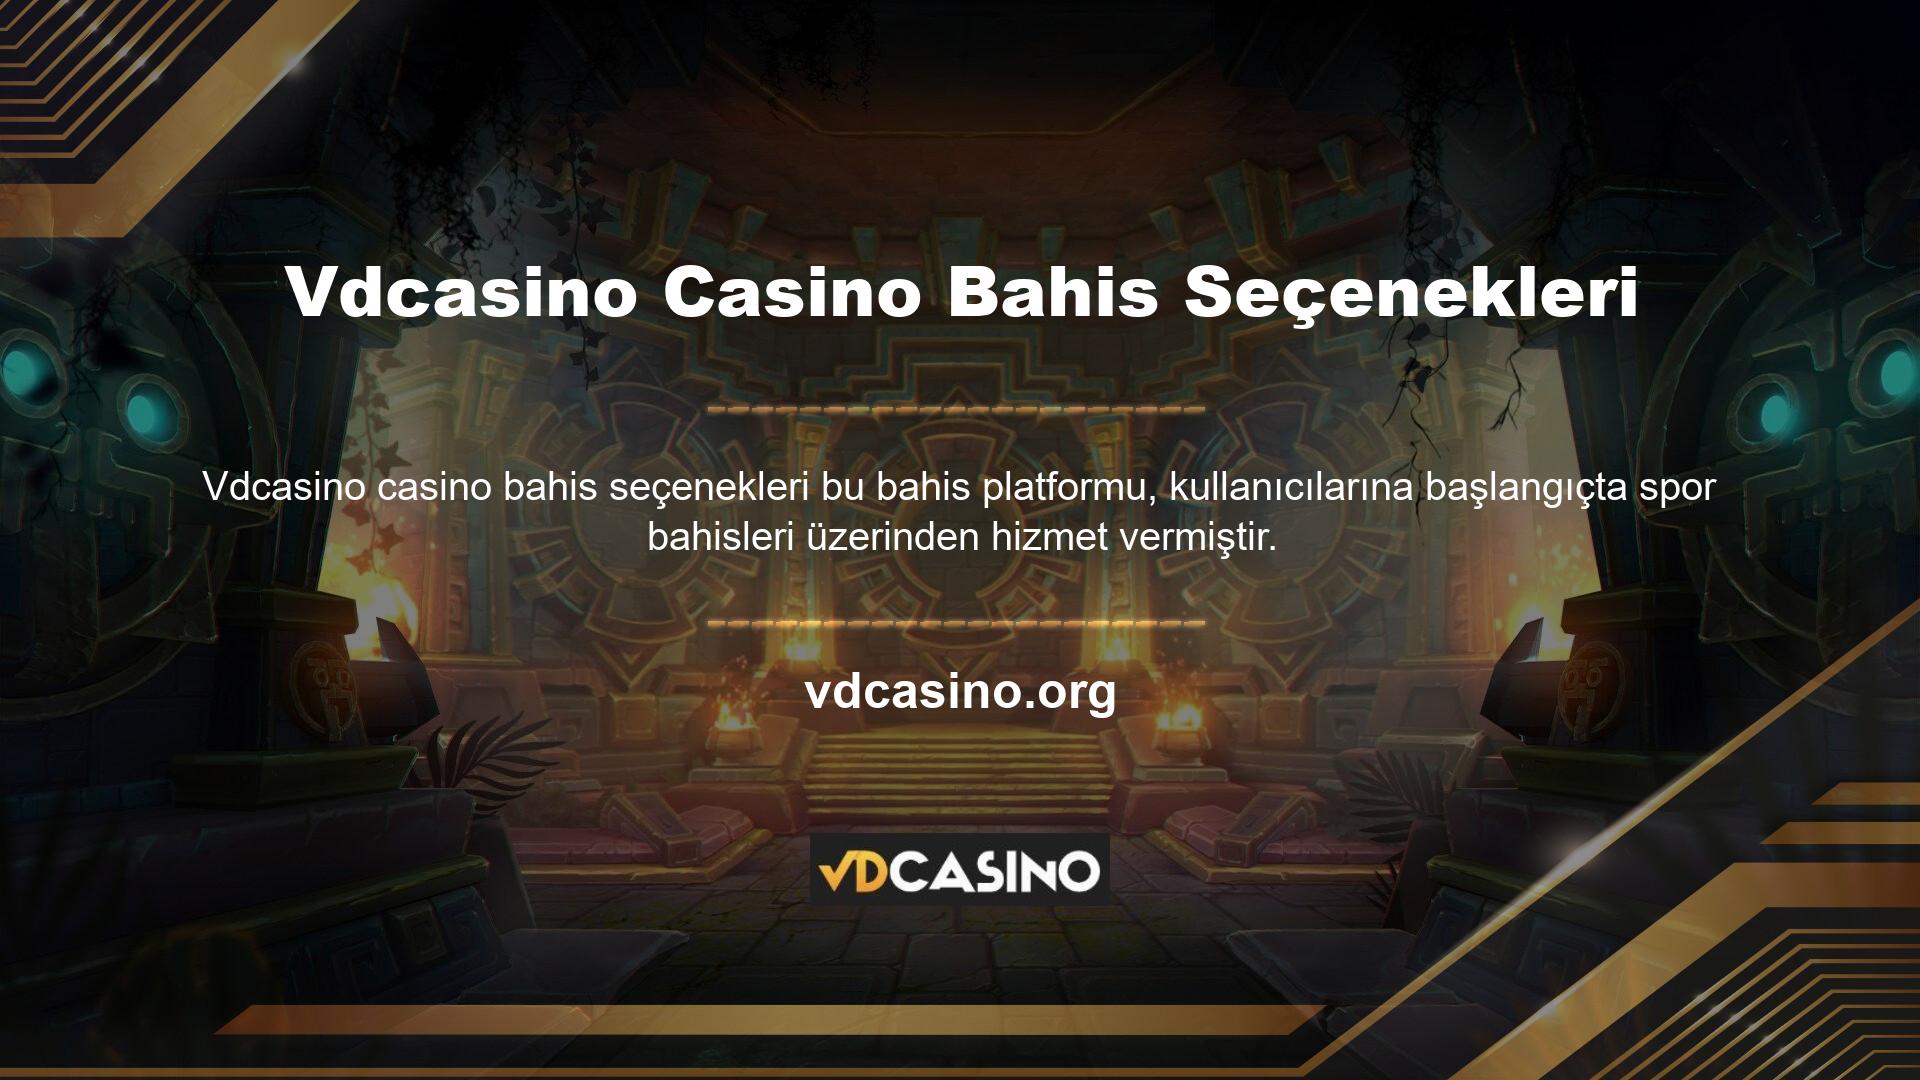 Ancak bahis sitelerinde kullanıcılarının ihtiyaçlarını karşılayamayabilecek casino oyunları da mevcuttur